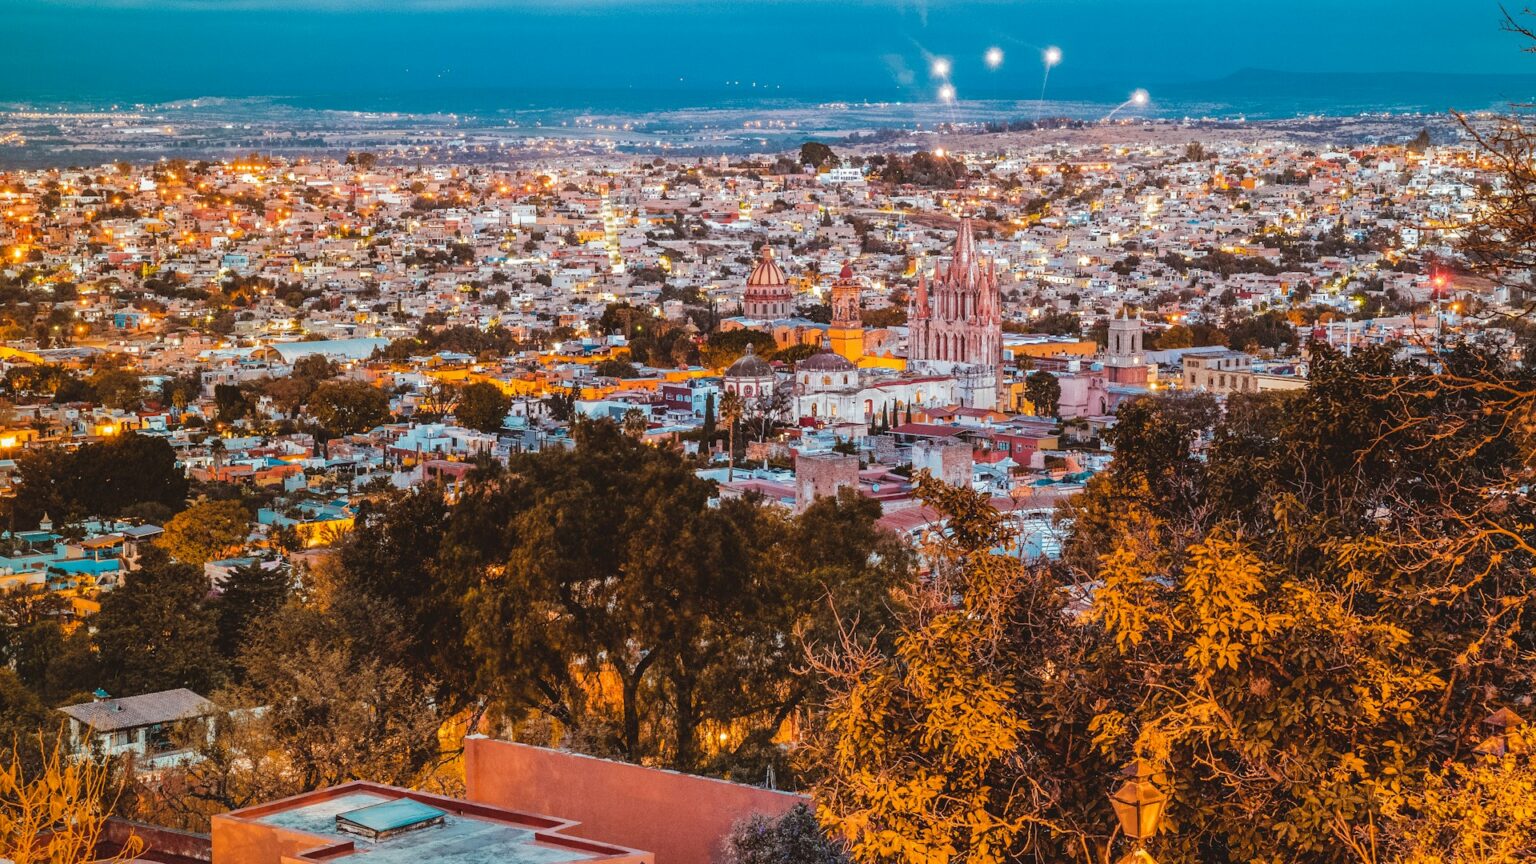 San Miguel de Allende - Mexico